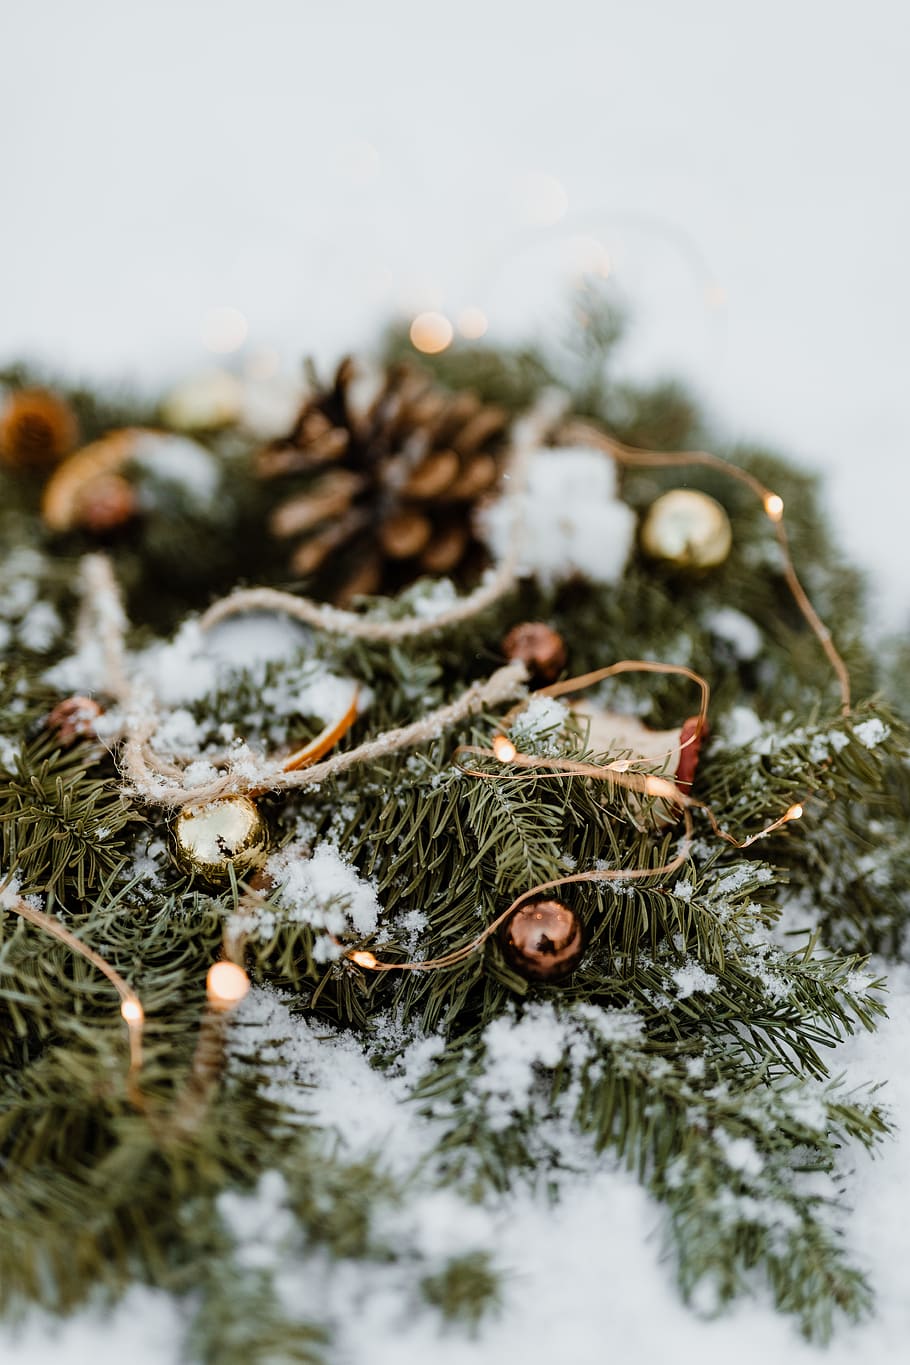 natal, decoração, decorações, dezembro, neve, Inverno, Coroa de flores, árvore, foco seletivo, temperatura fria